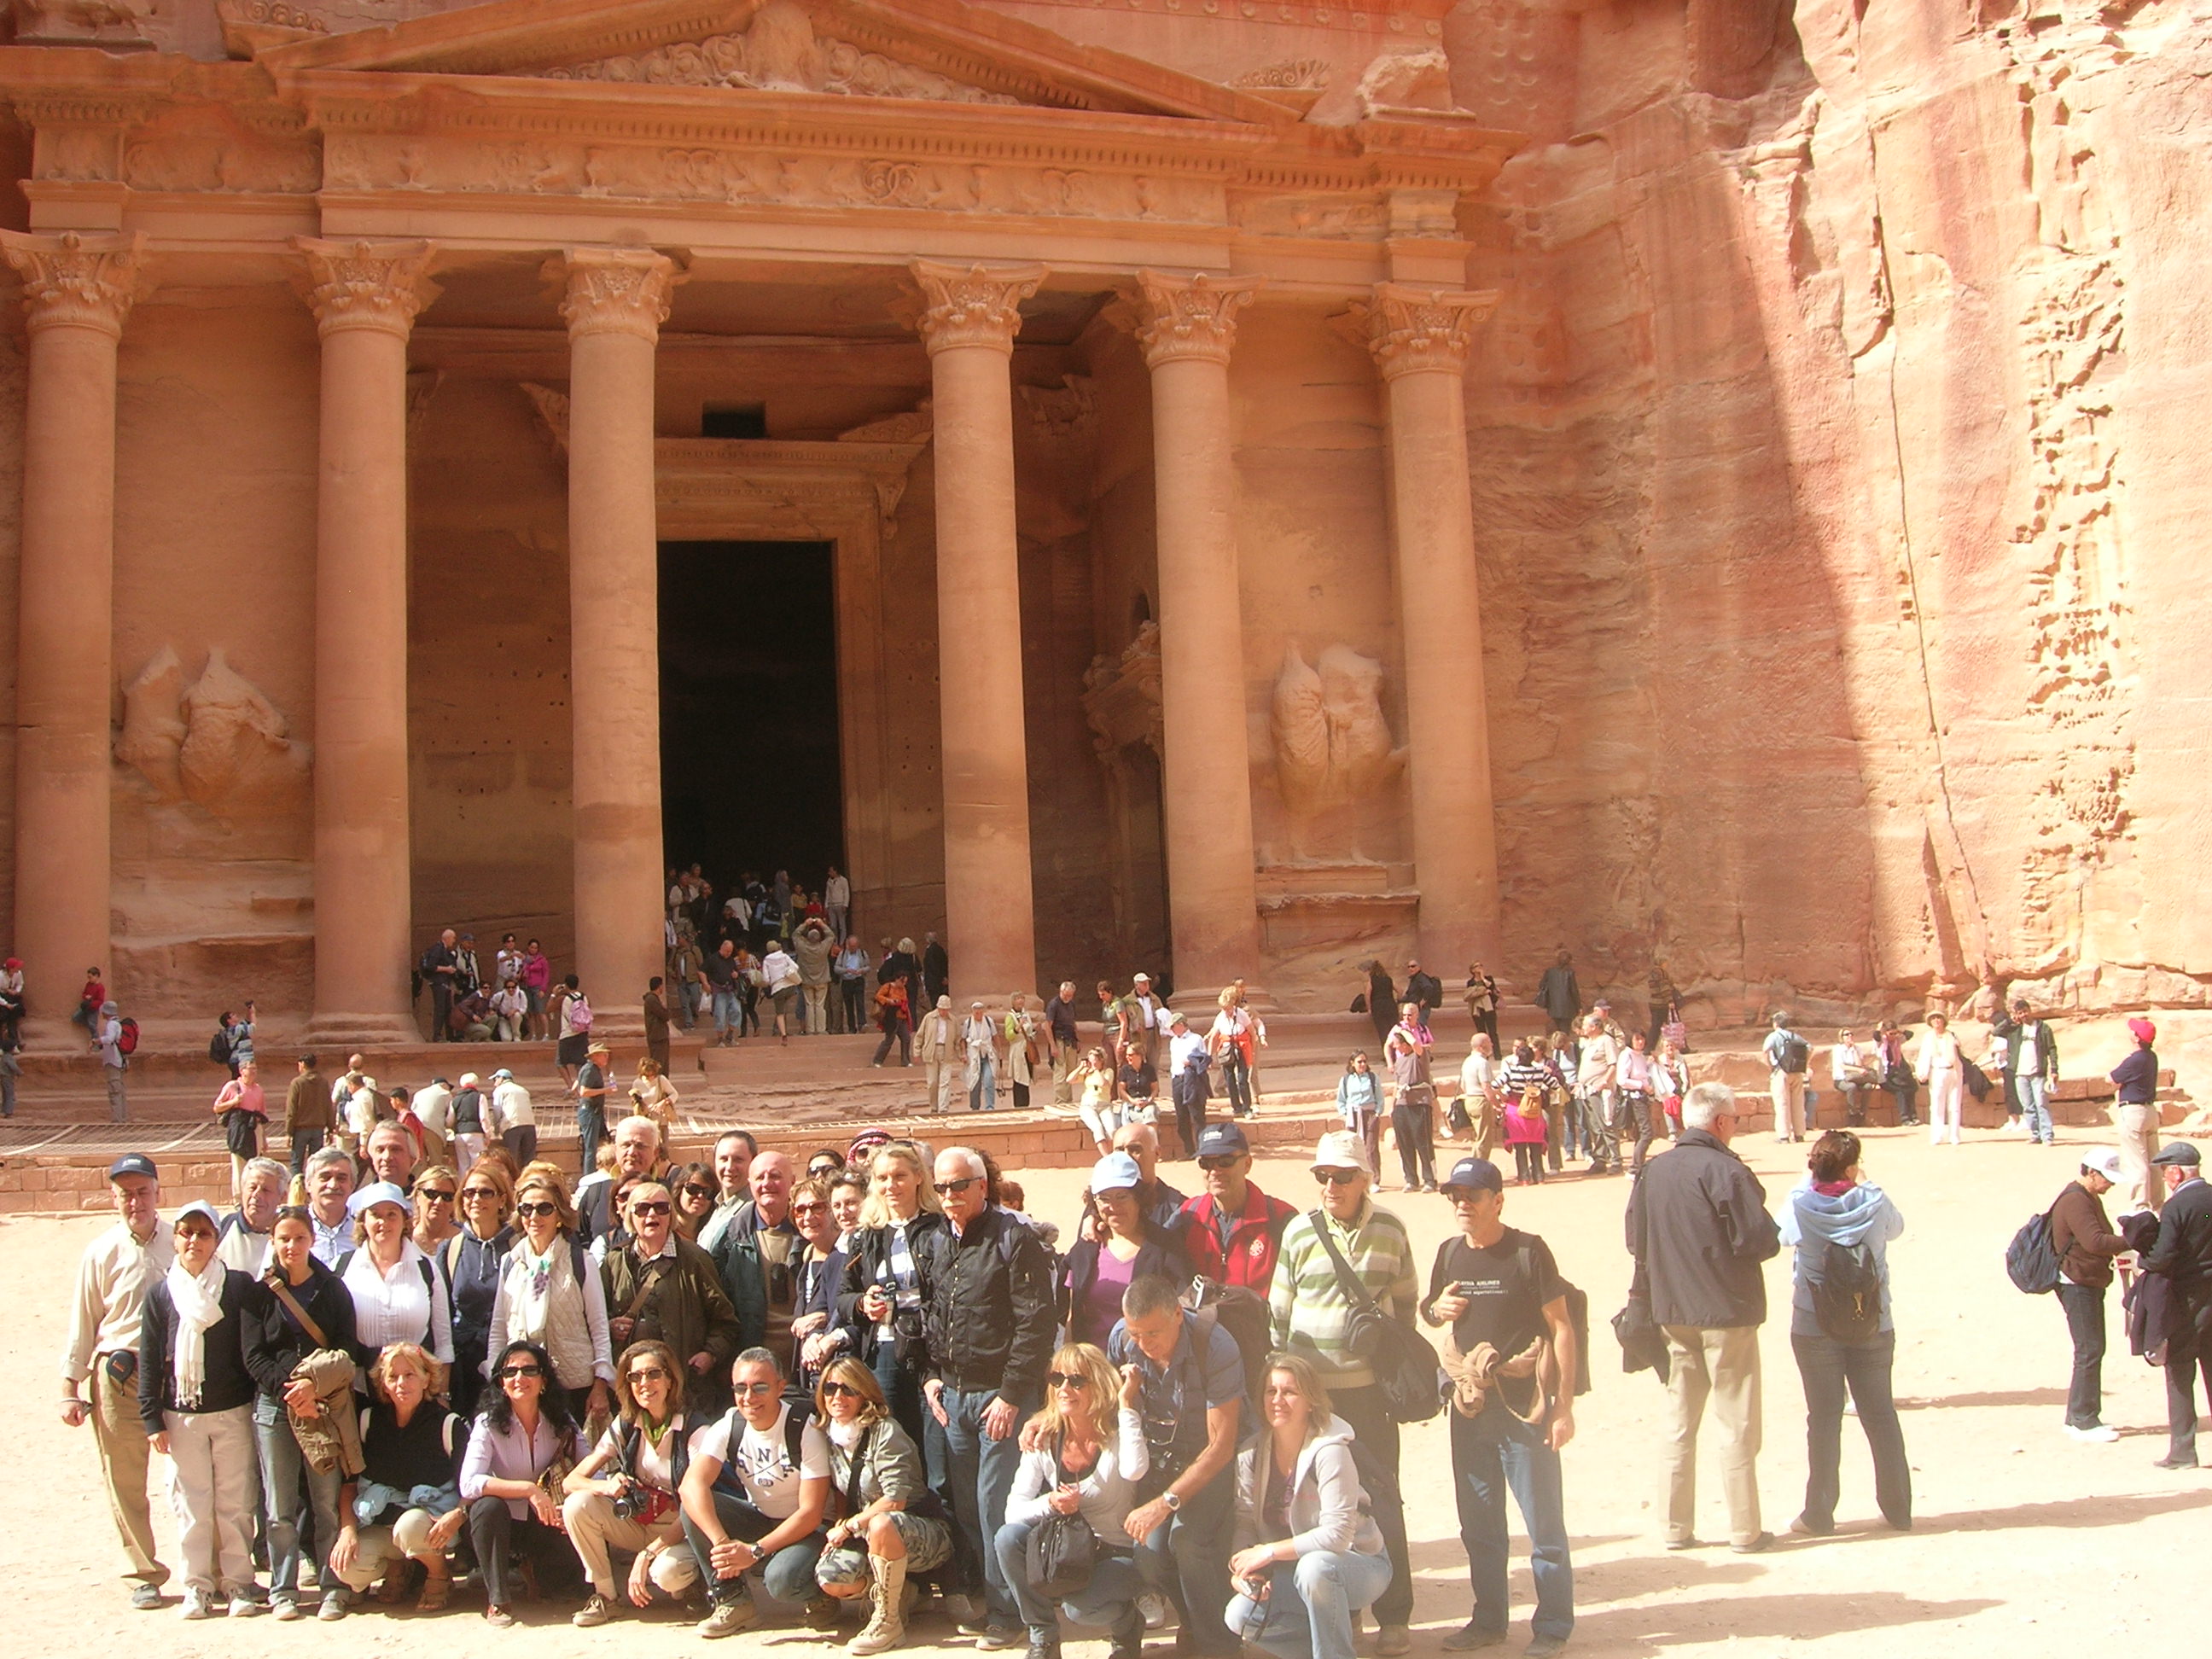 Turismo in Giordania: nel 2009 l’Italia al quarto posto nella classifica mondiale, dopo UK, USA e Francia